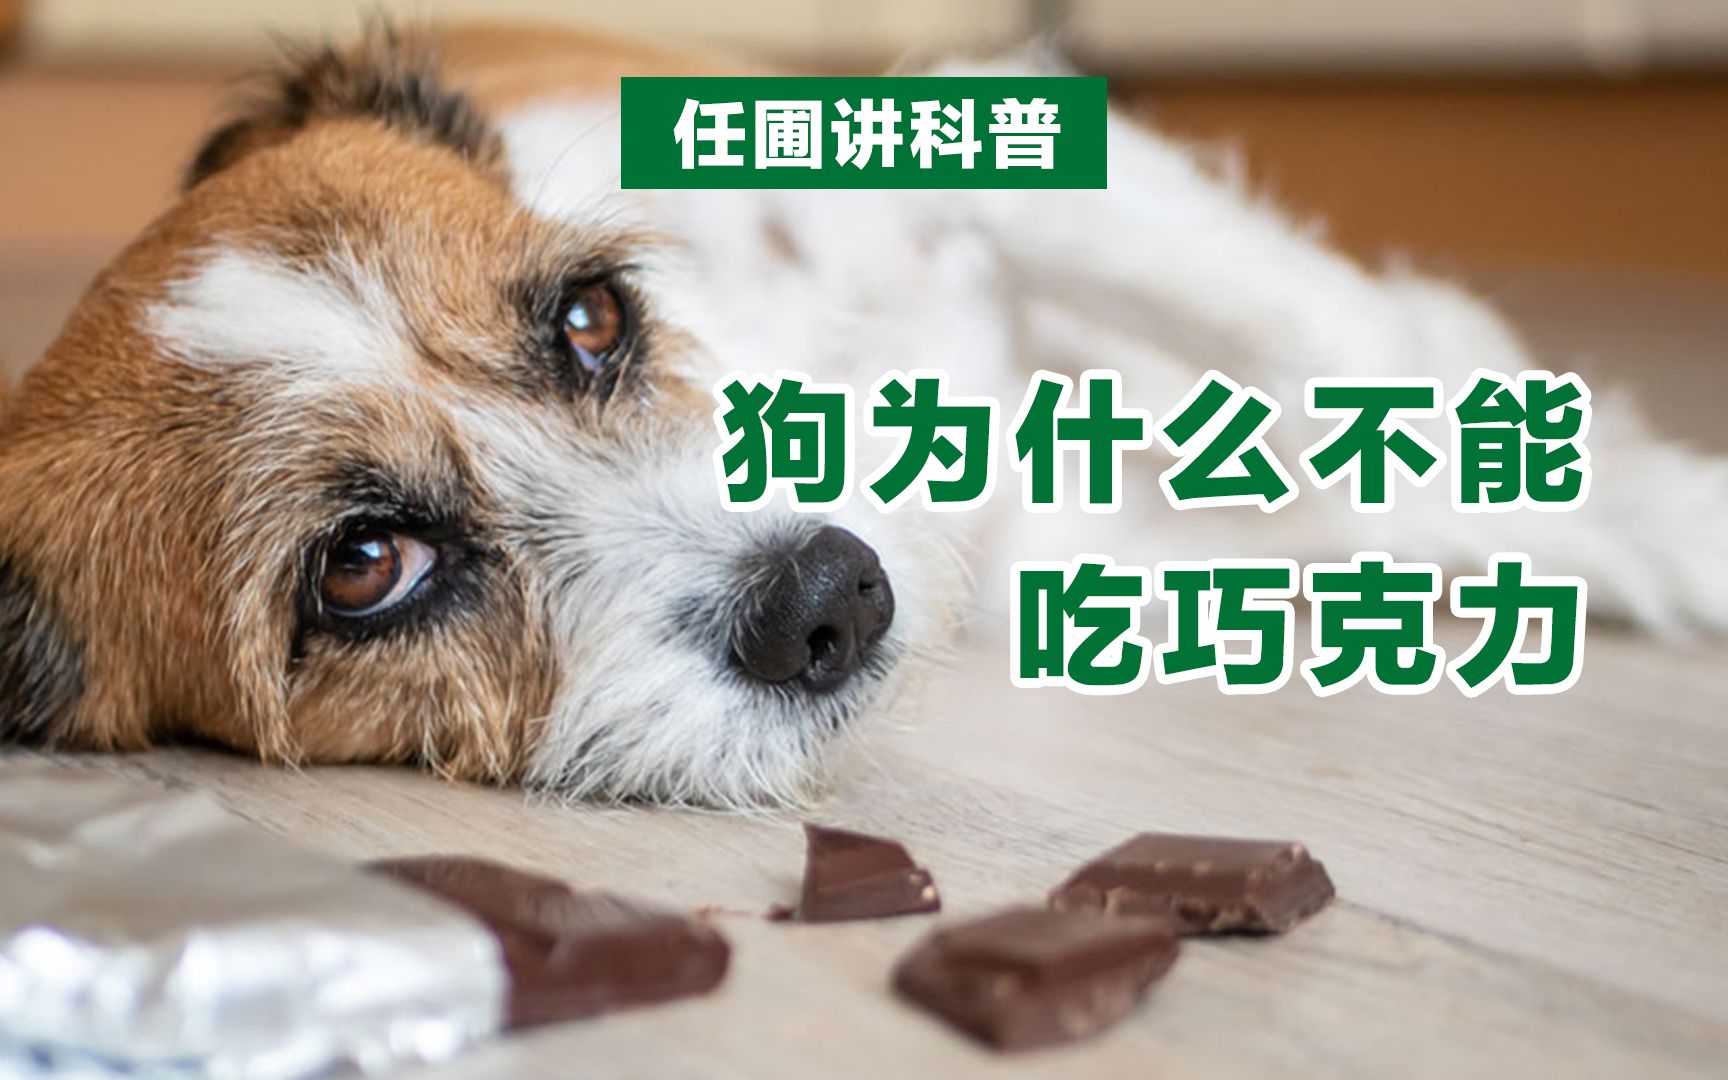 【任圃讲科普】为什么狗不能吃巧克力?